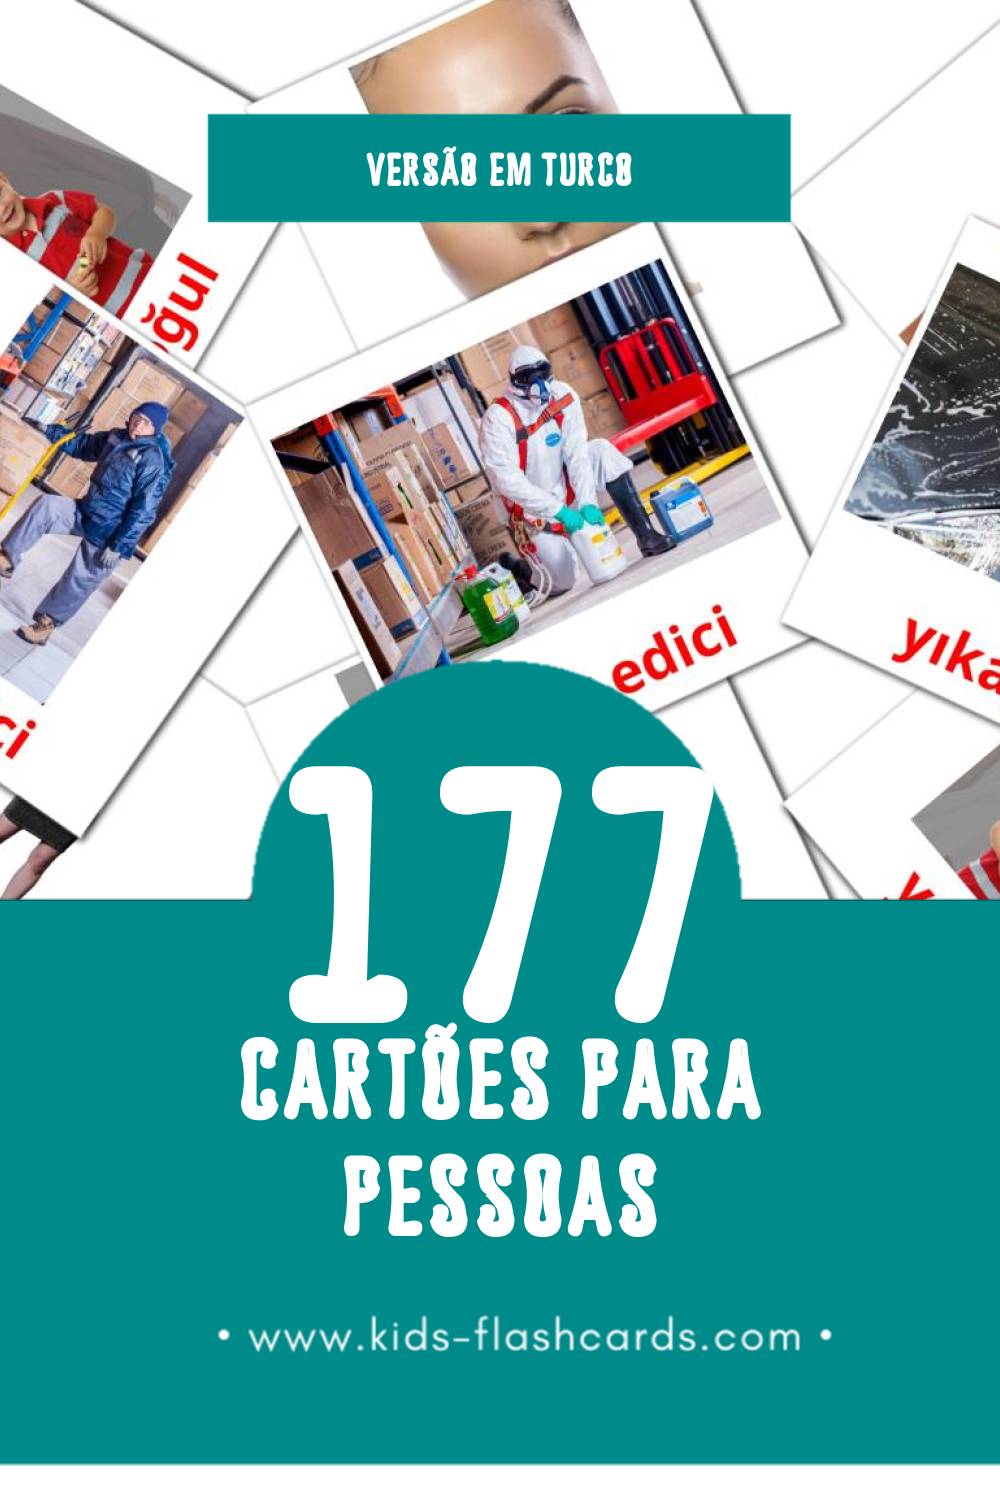 Flashcards de İnsanlar Visuais para Toddlers (177 cartões em Turco)